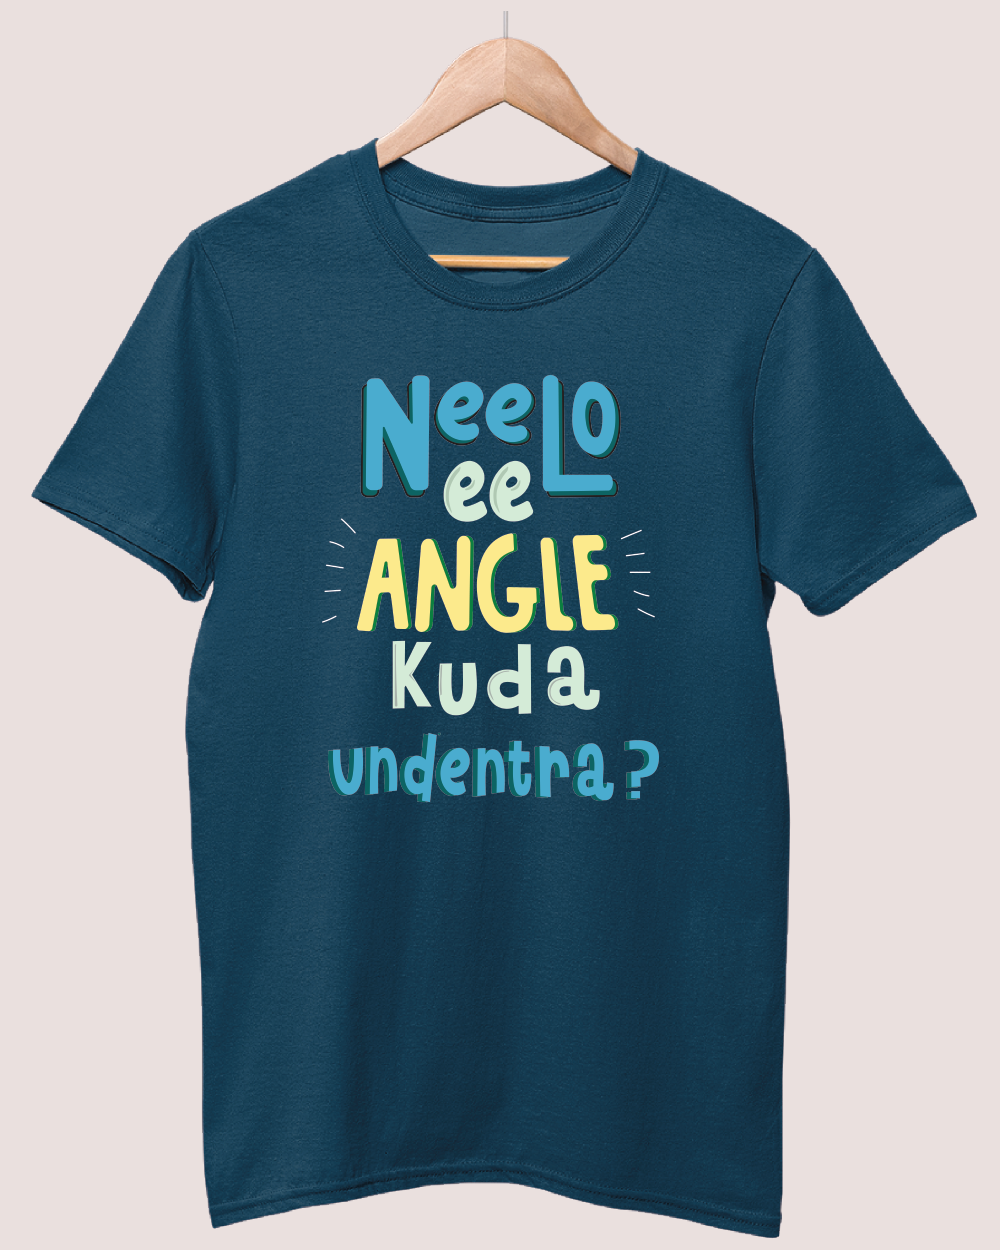 Neelo ee angle kooda undentra T-shirt